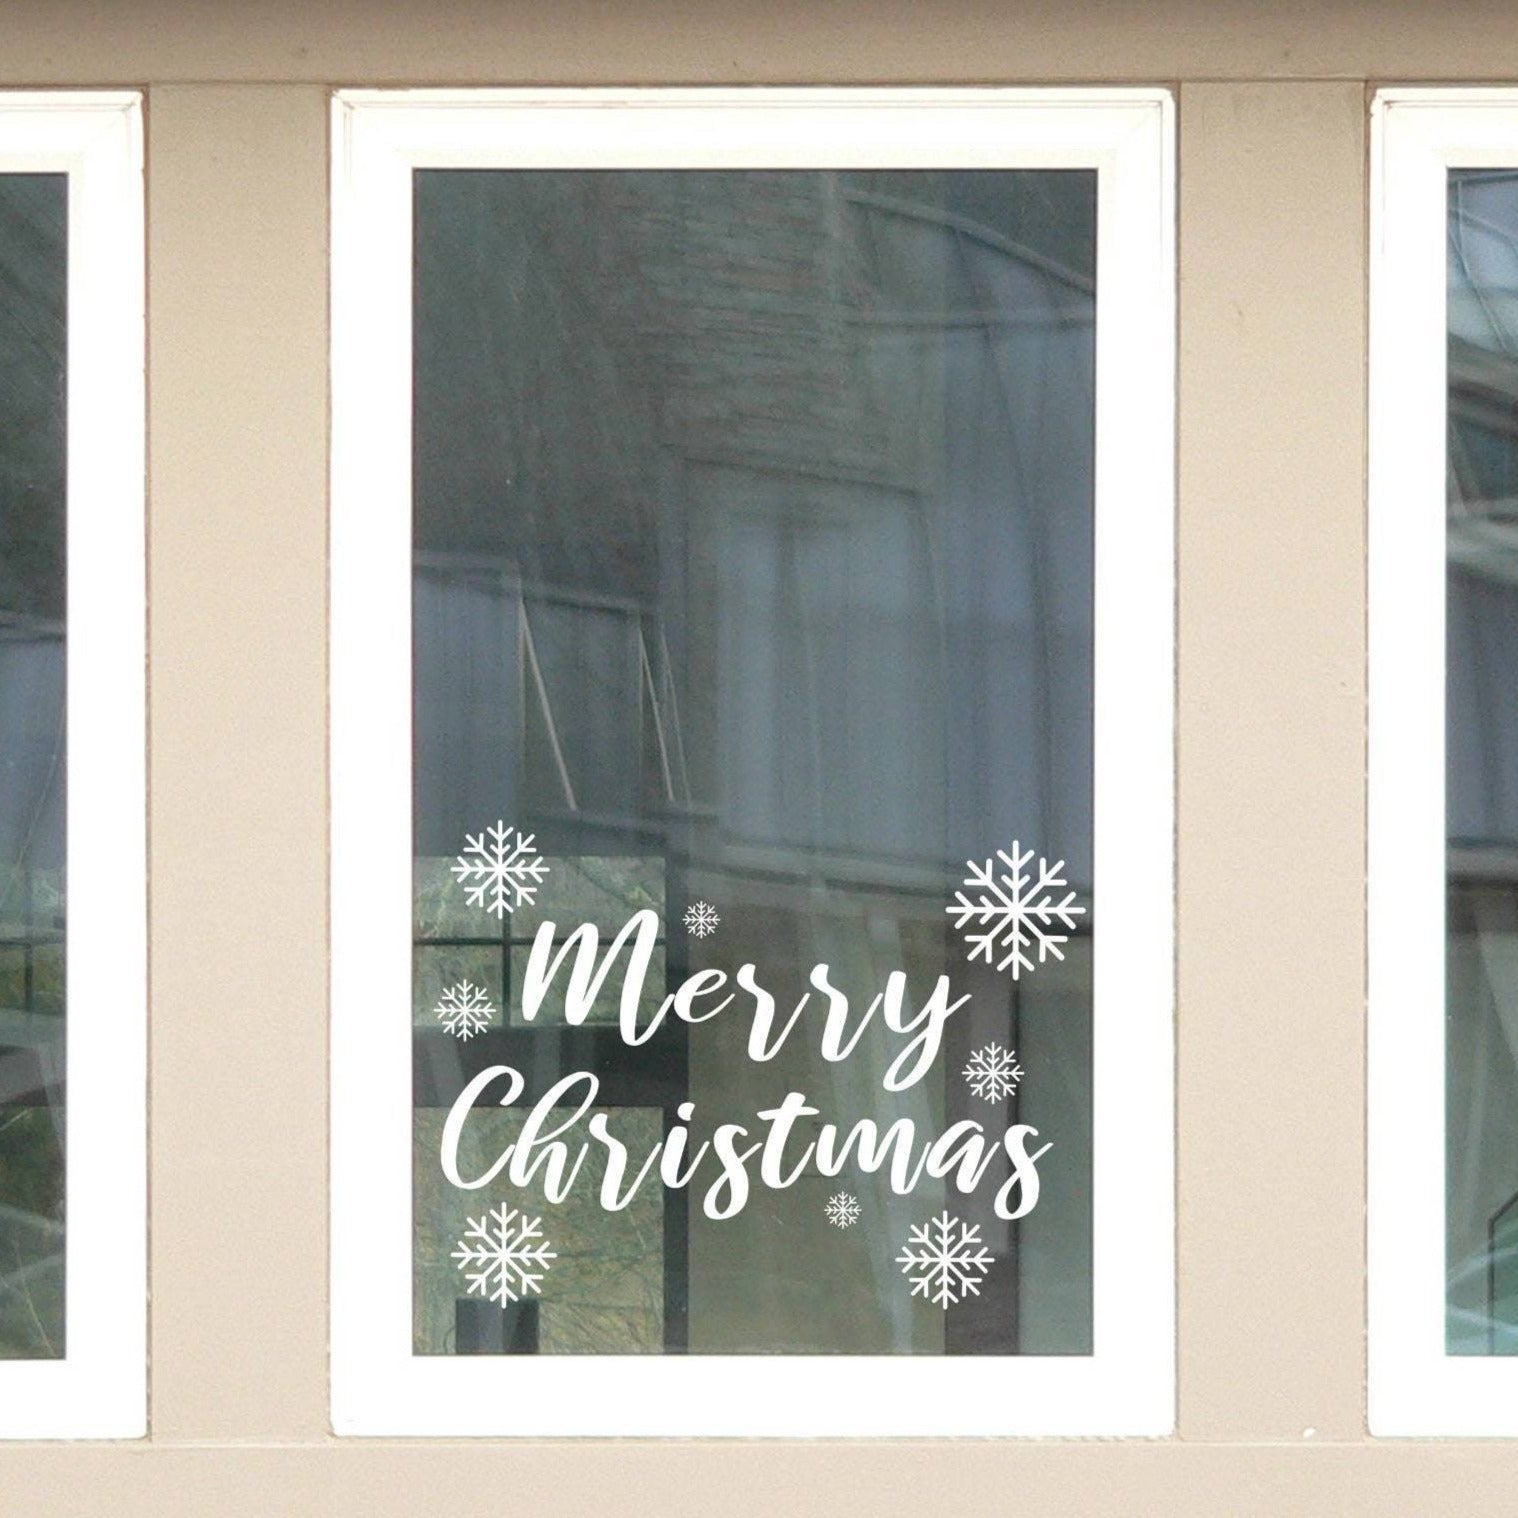 Merry Christmas Window Vinyl met sneeuwvlokken